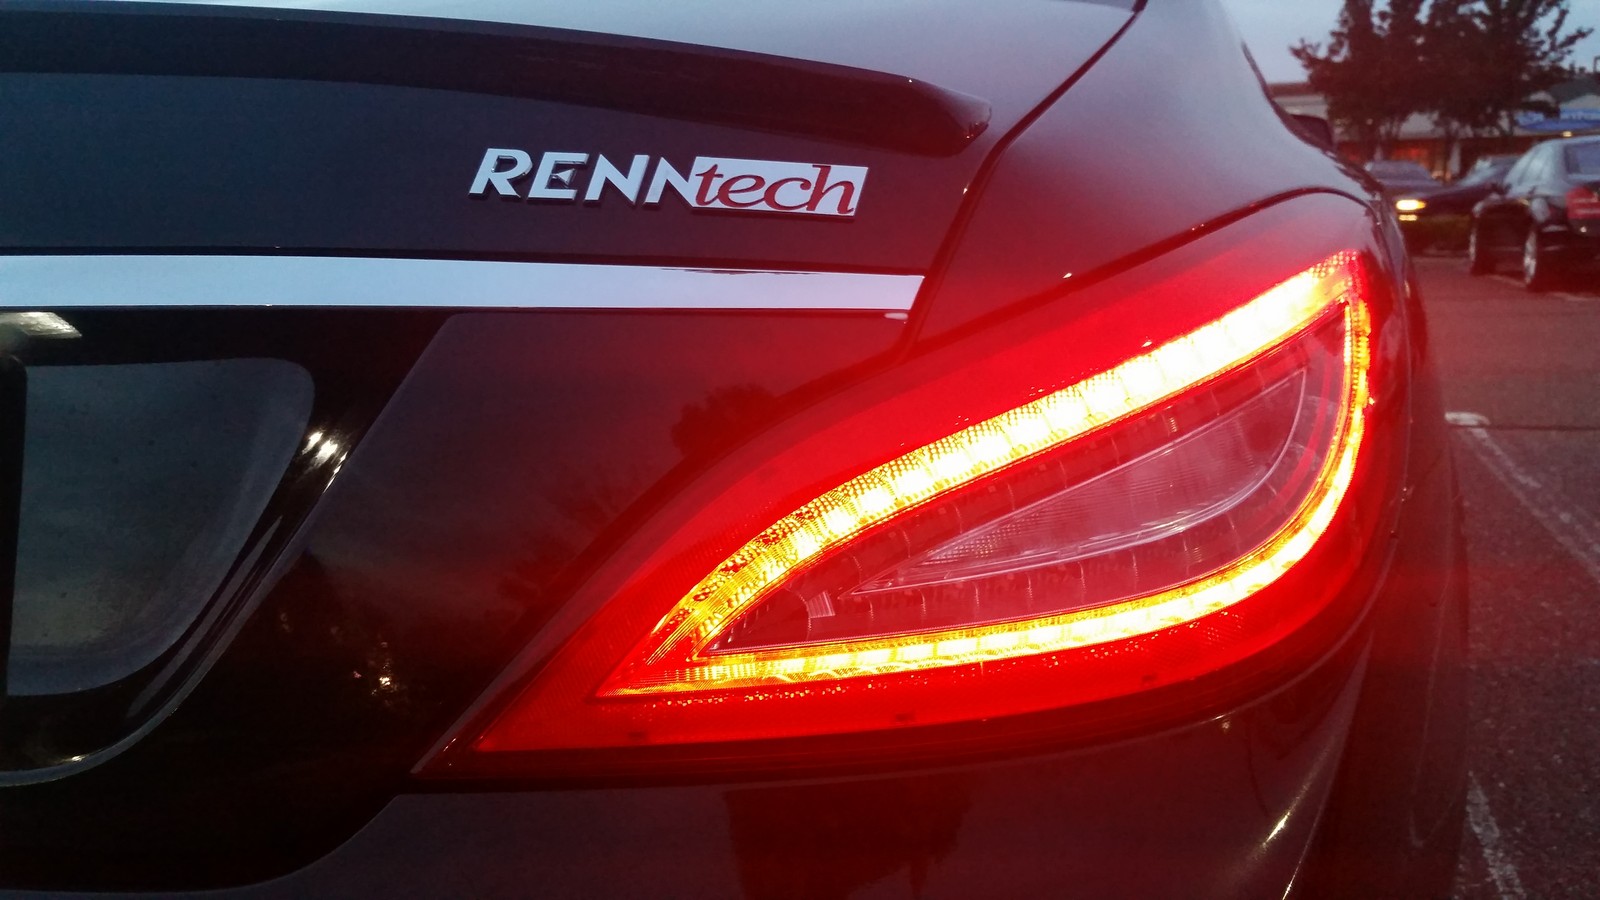  2012 Mercedes-Benz CLS550 RENNTECH